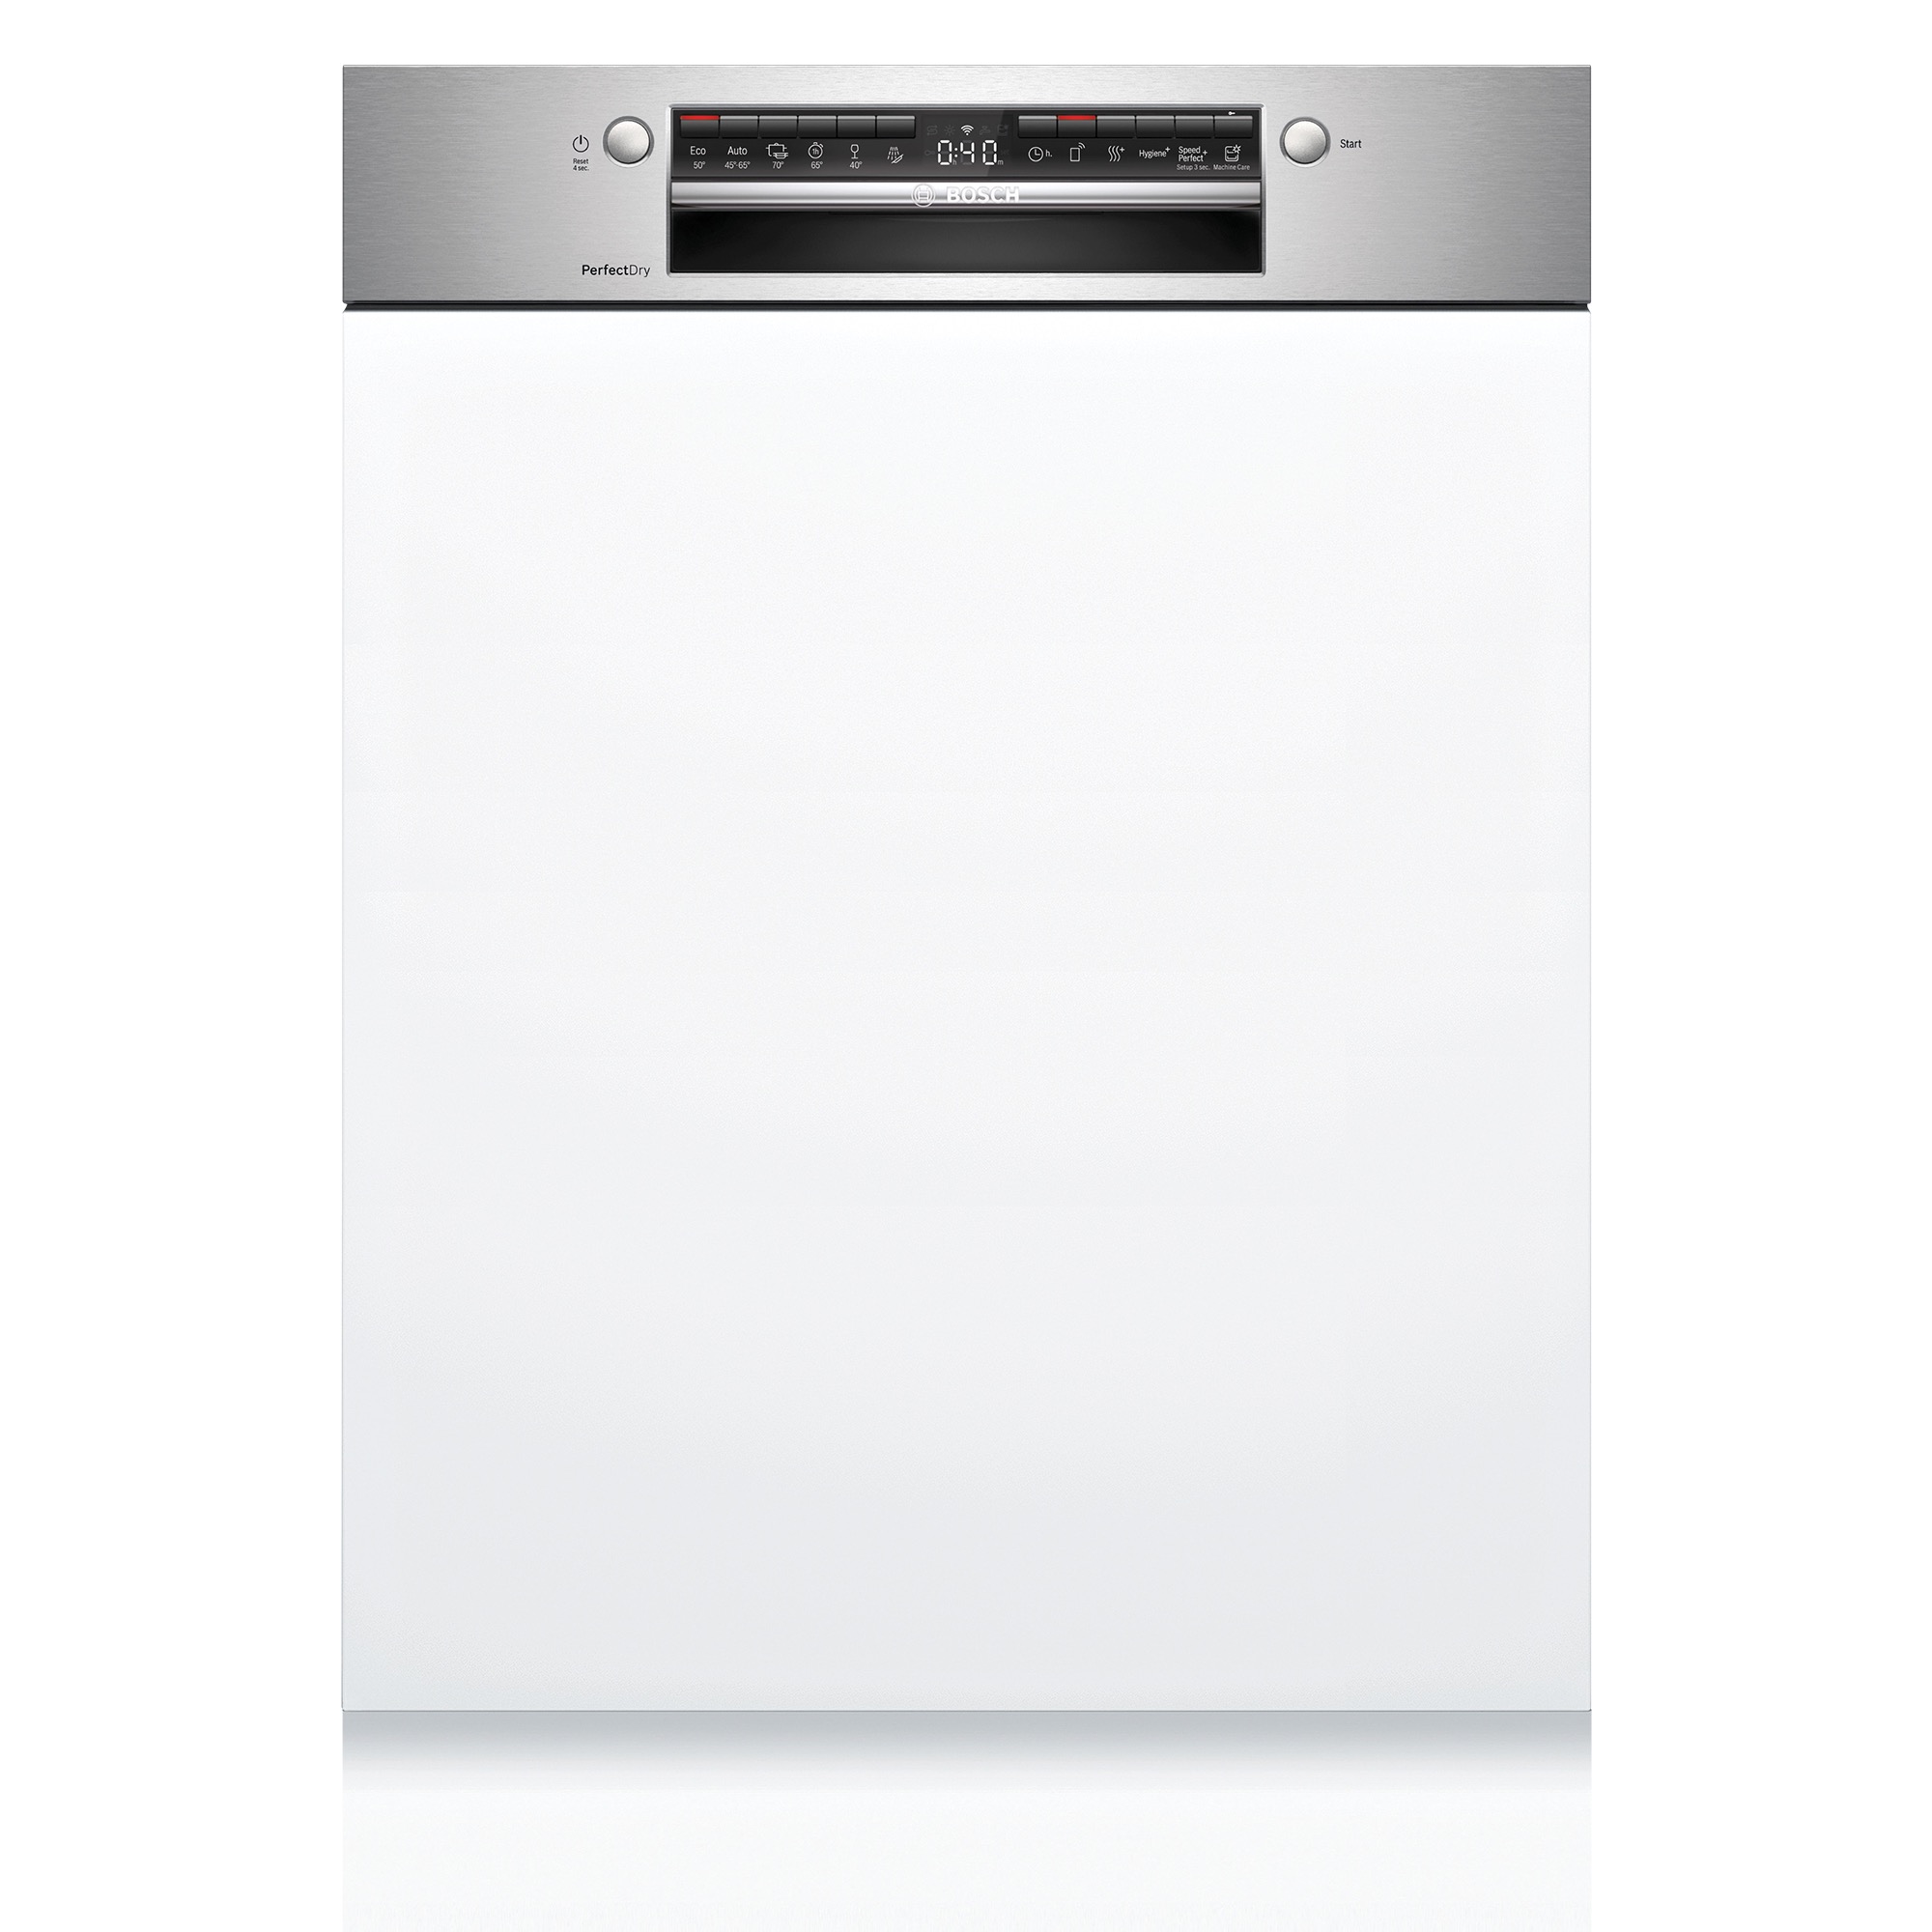 ビルトイン食洗機 フロントオープン W600 前面操作タイプ ゼオライトドライ（本体のみ） KB-PT004-03-G234 正面に操作パネルがあります。白い面材と巾木は付属しません